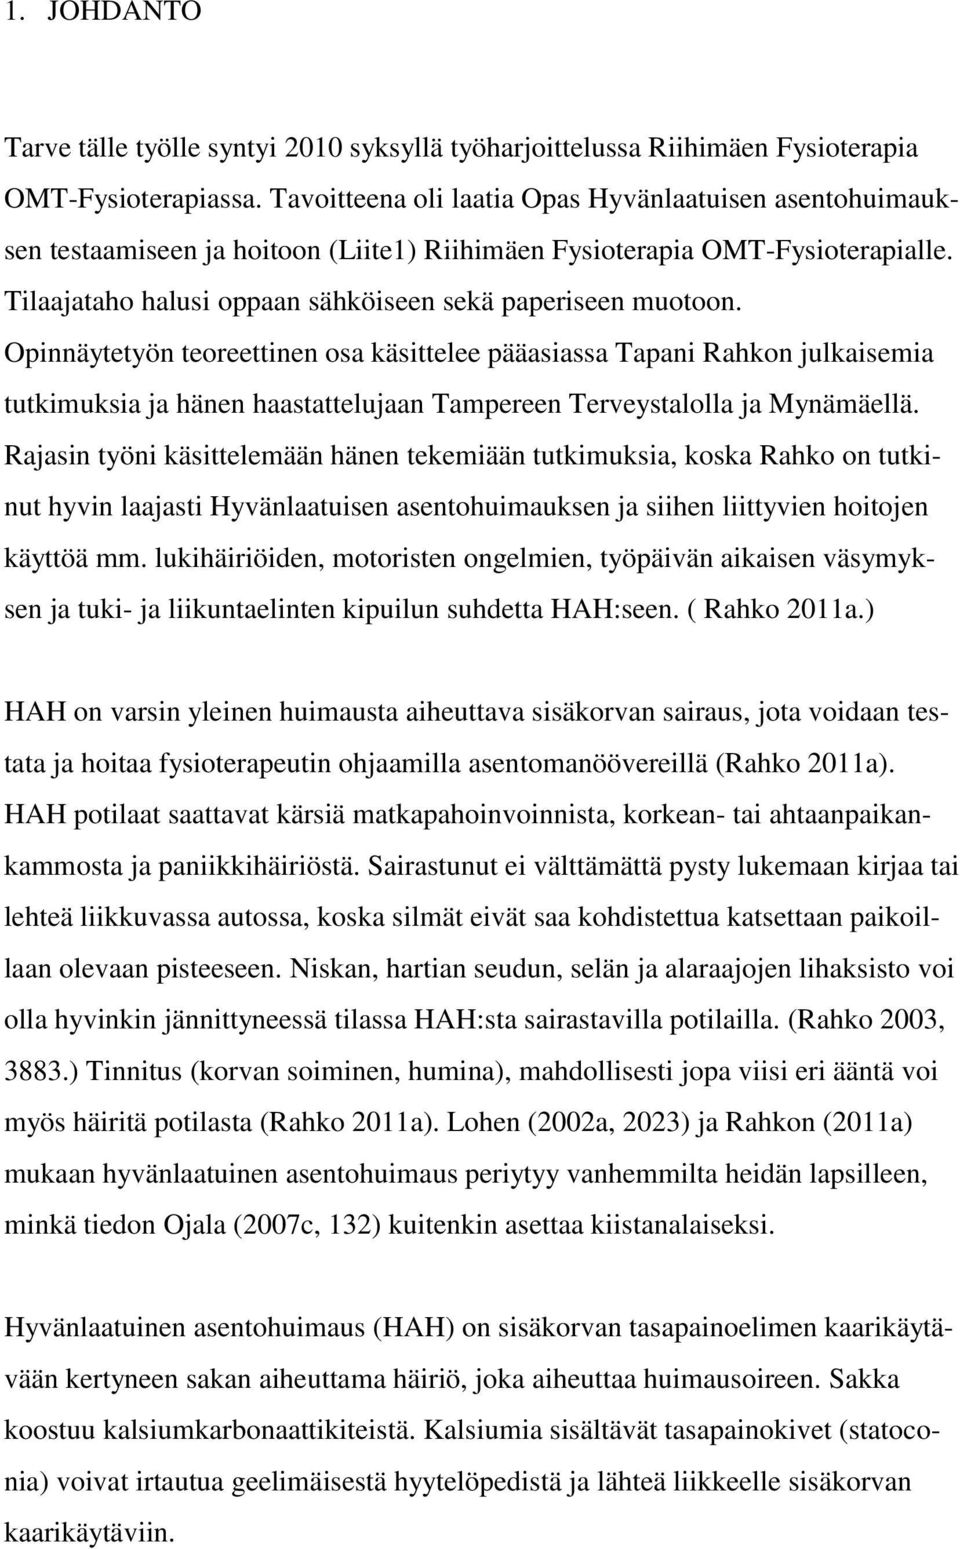 Opinnäytetyön teoreettinen osa käsittelee pääasiassa Tapani Rahkon julkaisemia tutkimuksia ja hänen haastattelujaan Tampereen Terveystalolla ja Mynämäellä.